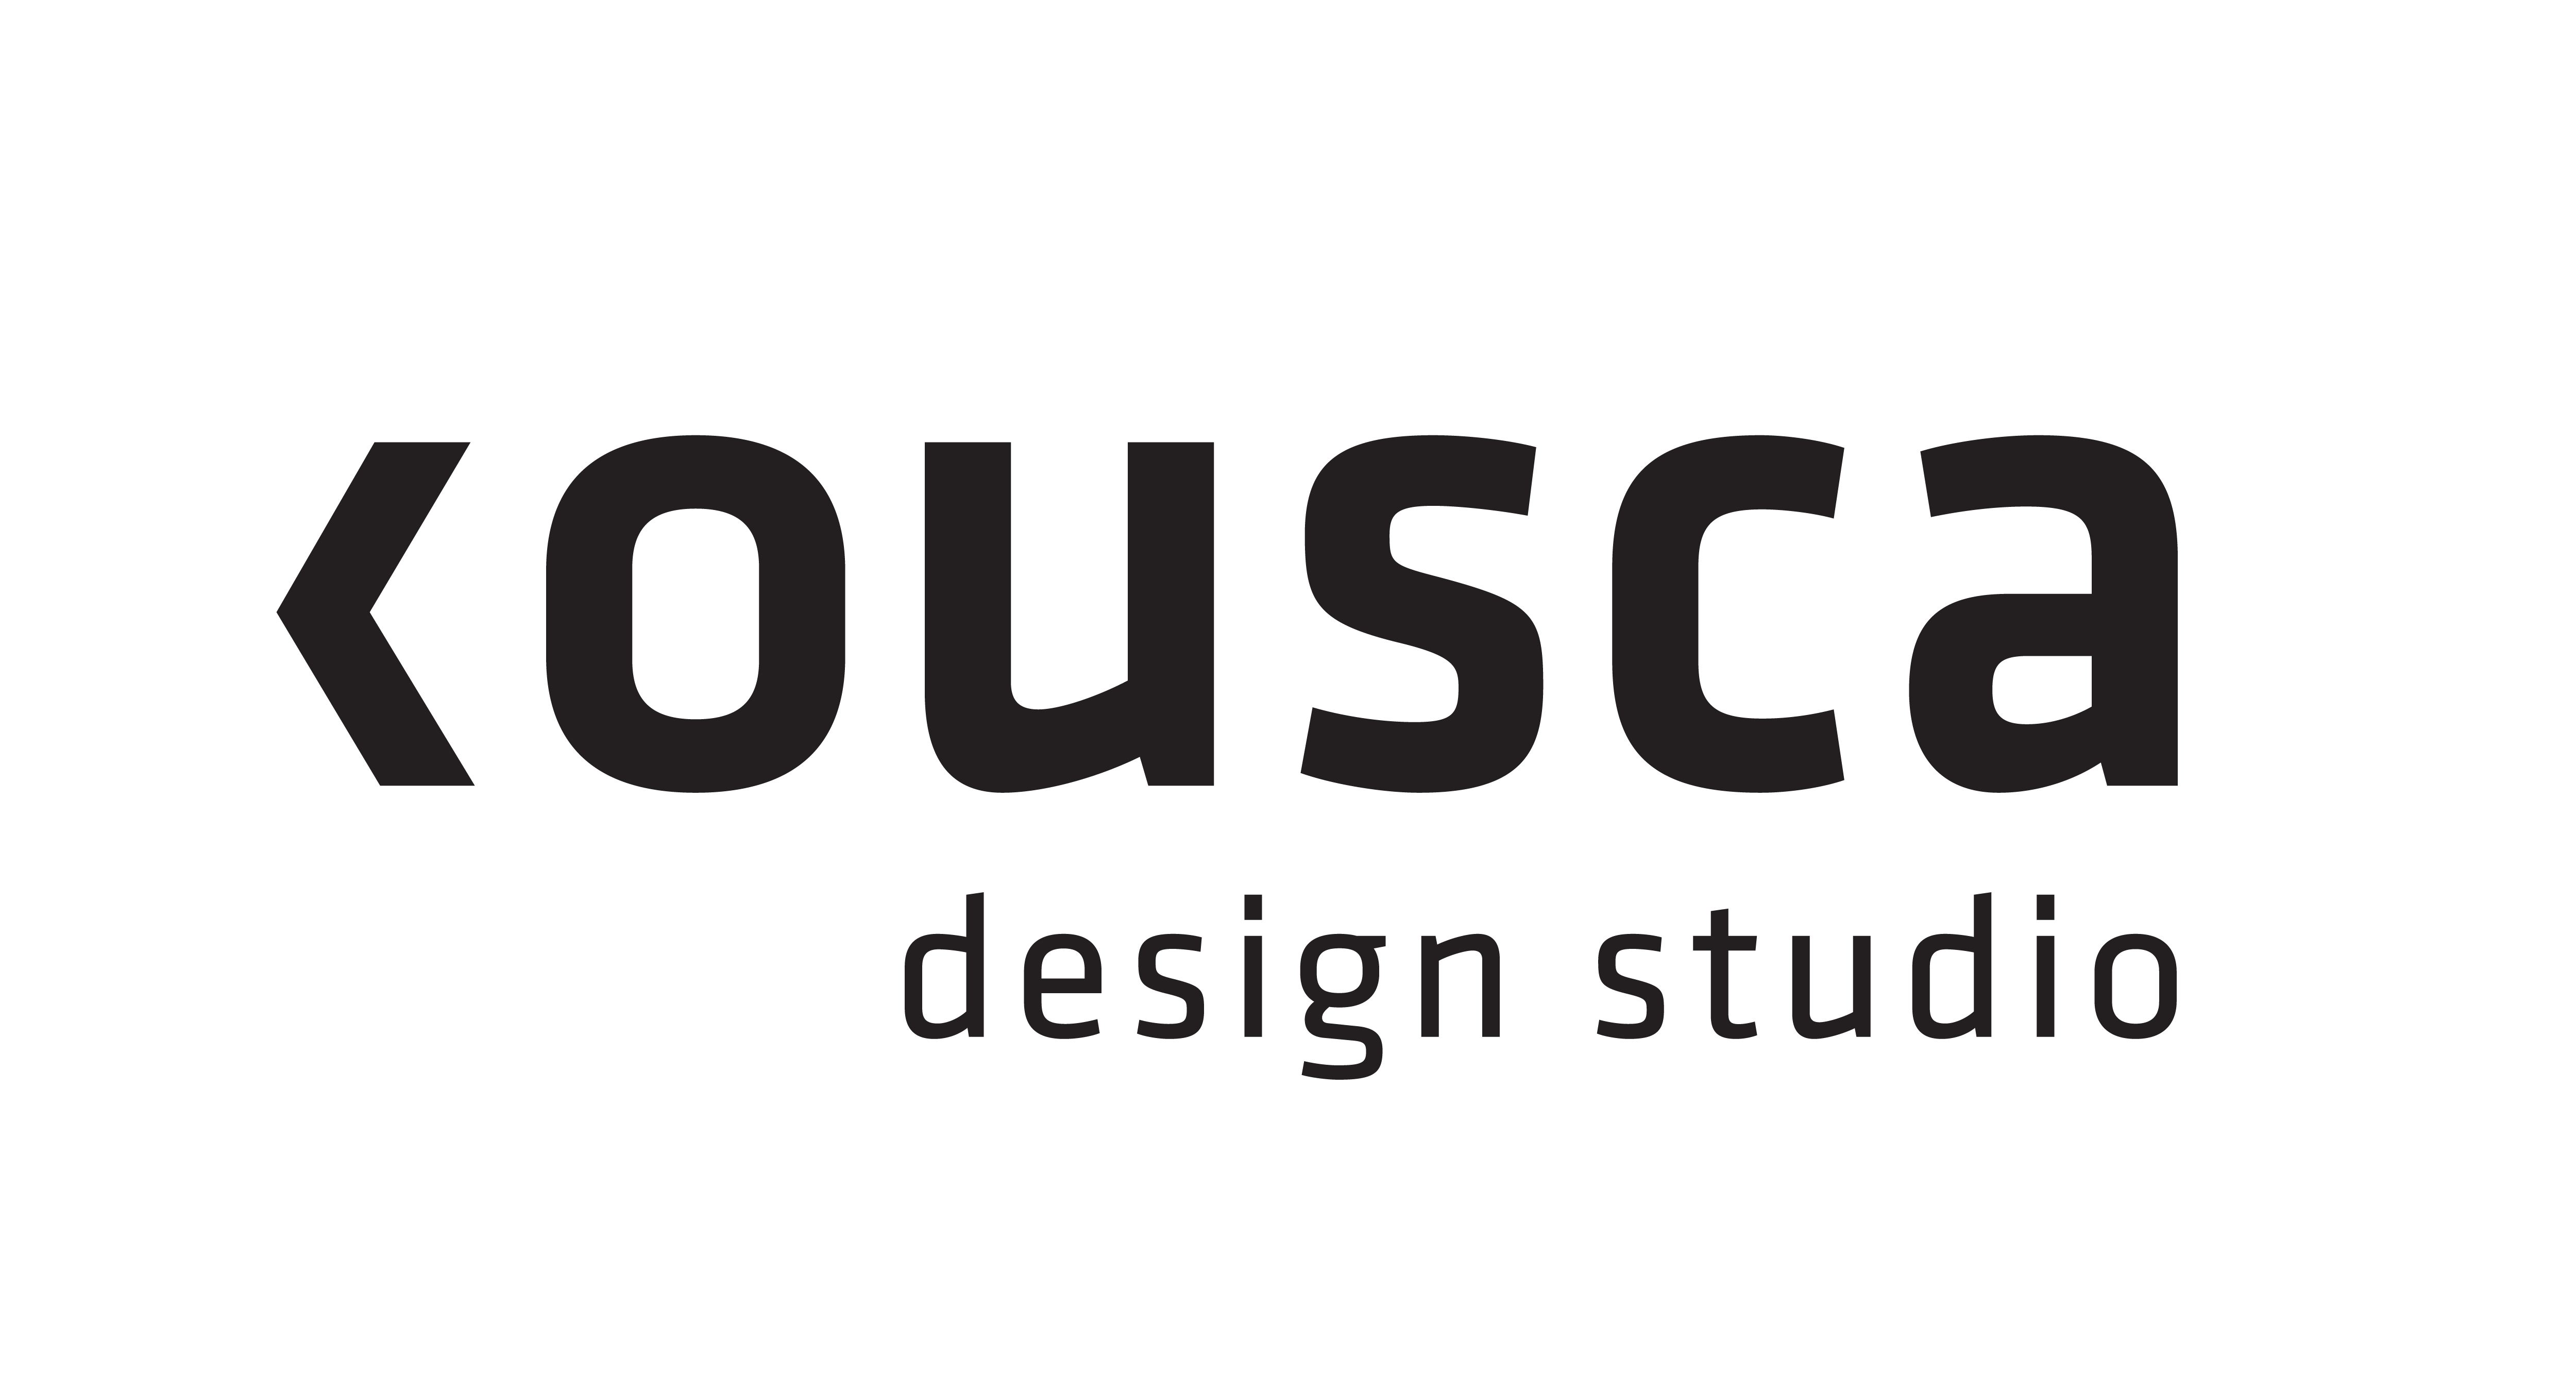 Kousca Design Studio Logo